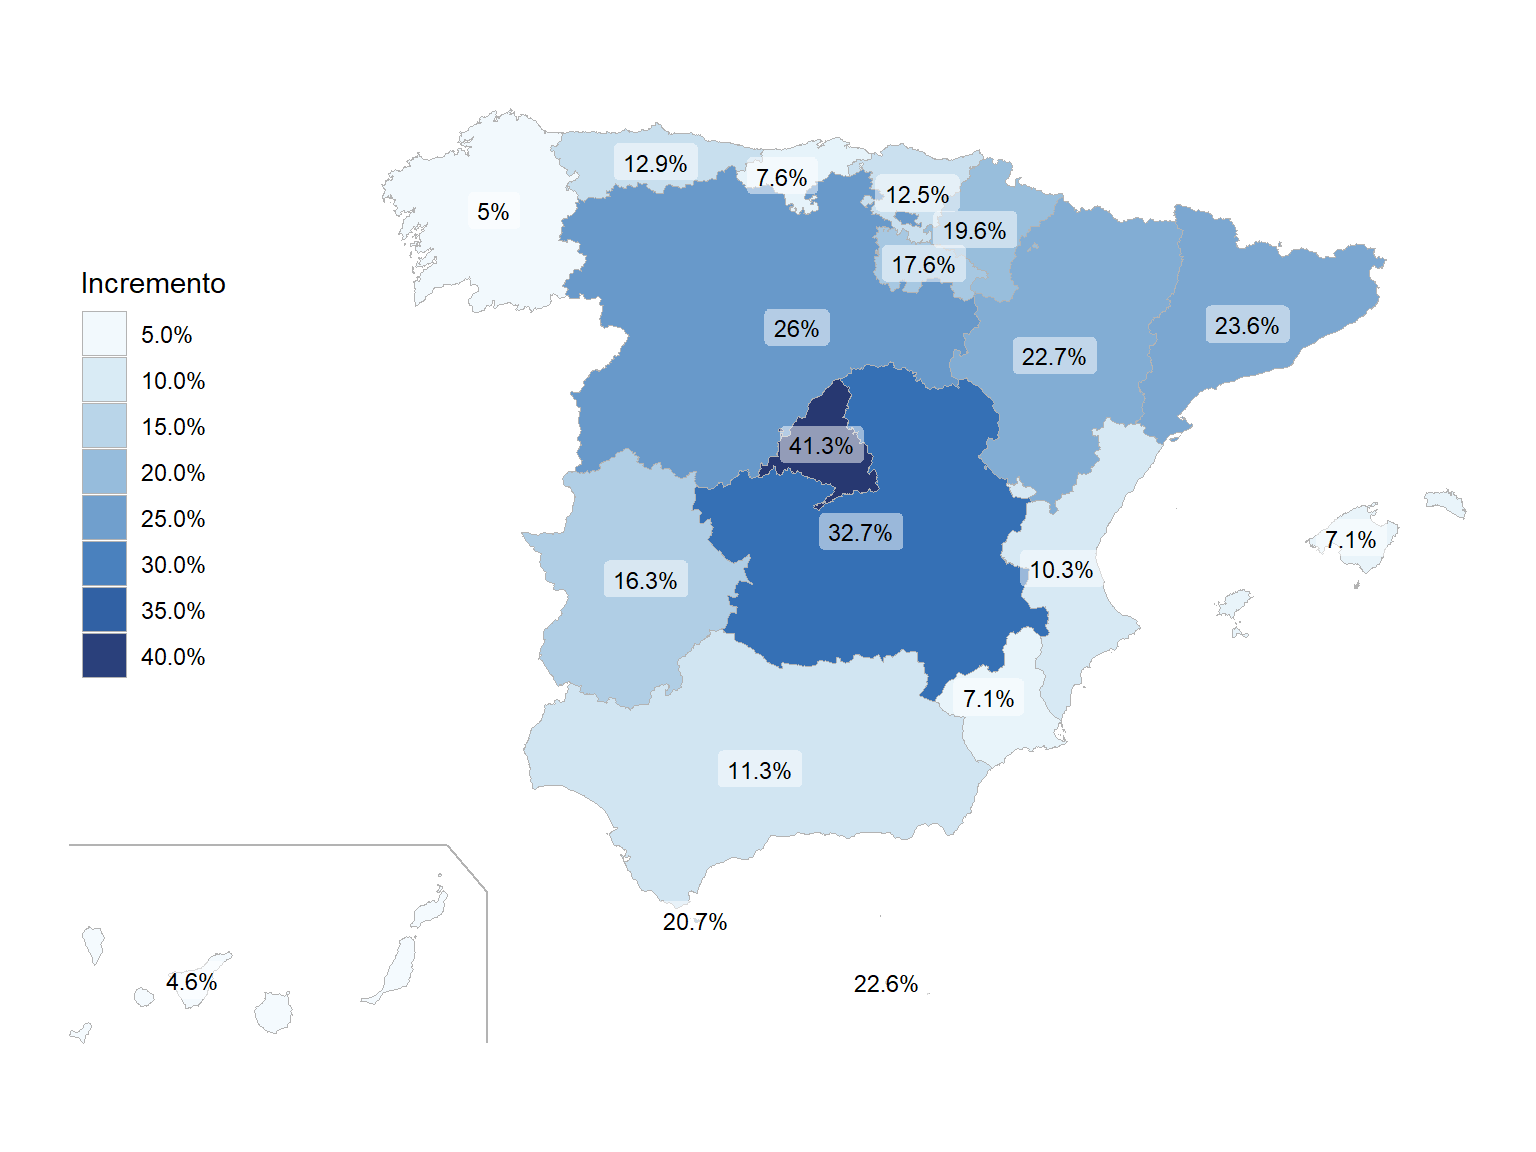 Porcentaje de incremento de las defunciones en el año 2020 respecto al 2019 por CCAA (datos [INE](https://www.ine.es/jaxiT3/Tabla.htm?t=6546)).